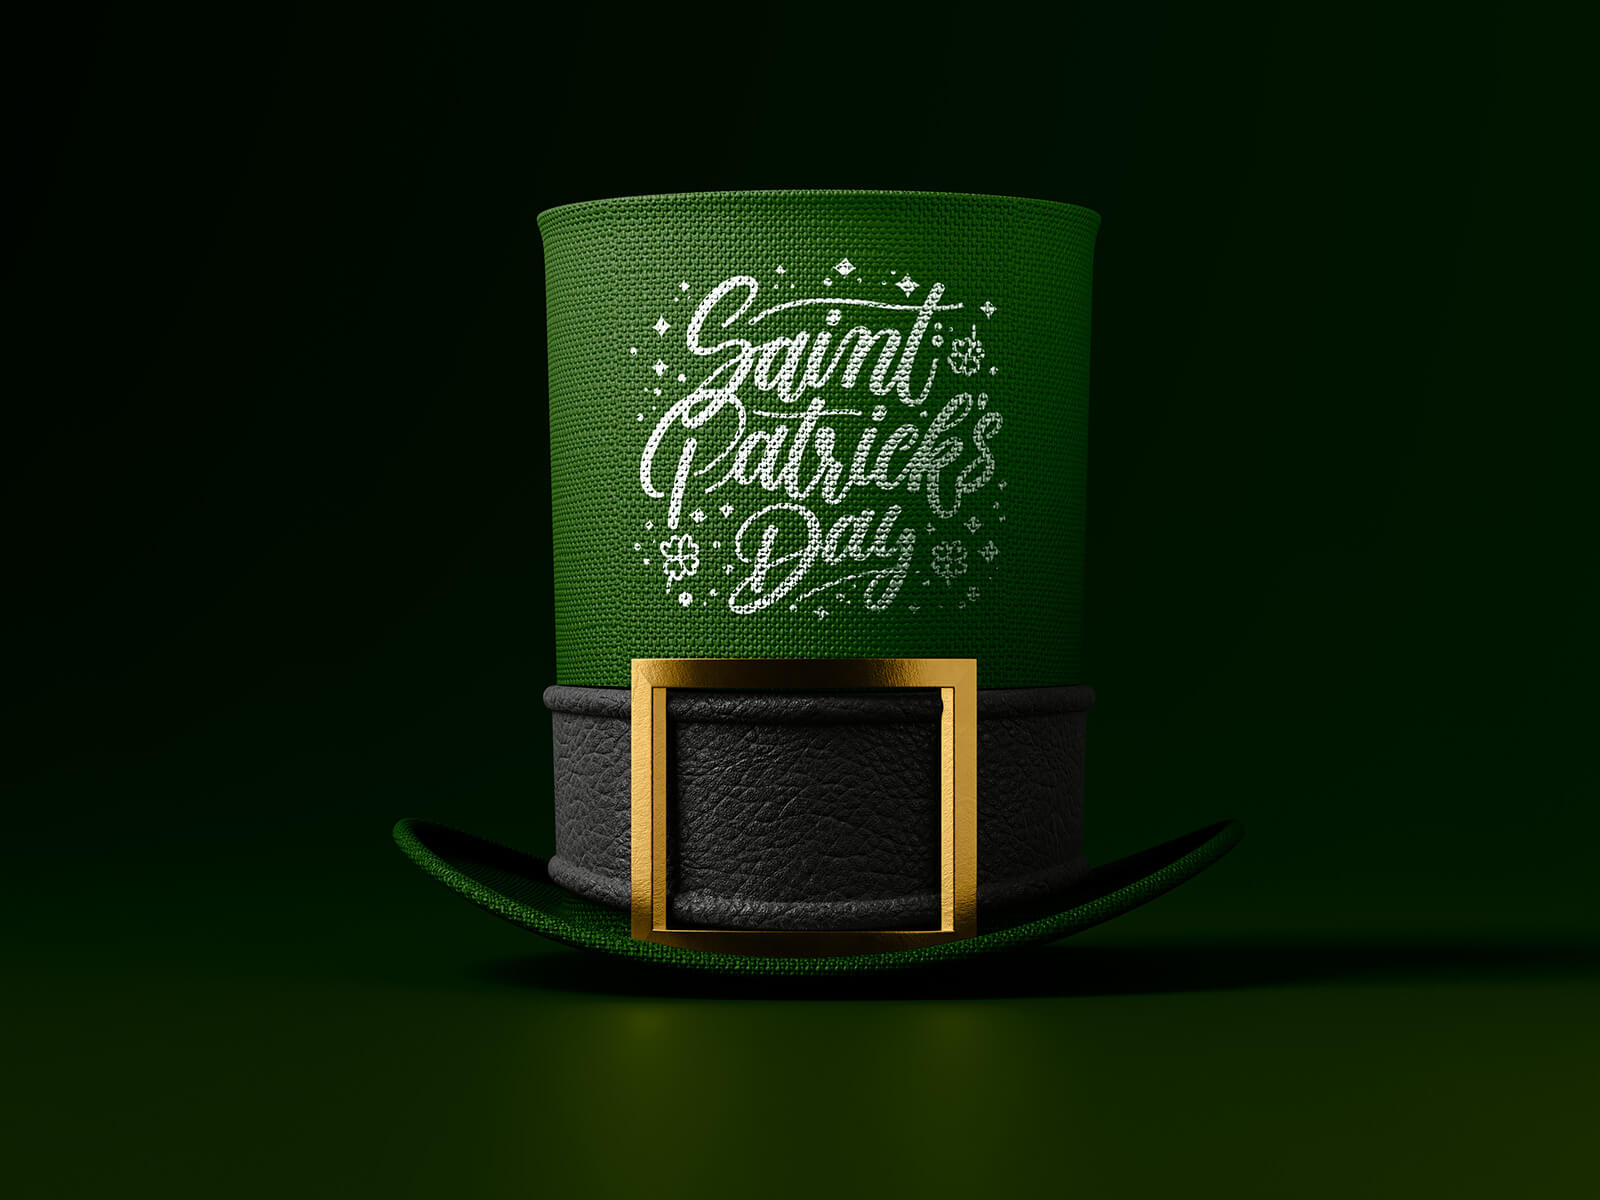 Made de chapeau de la Saint-Patrick